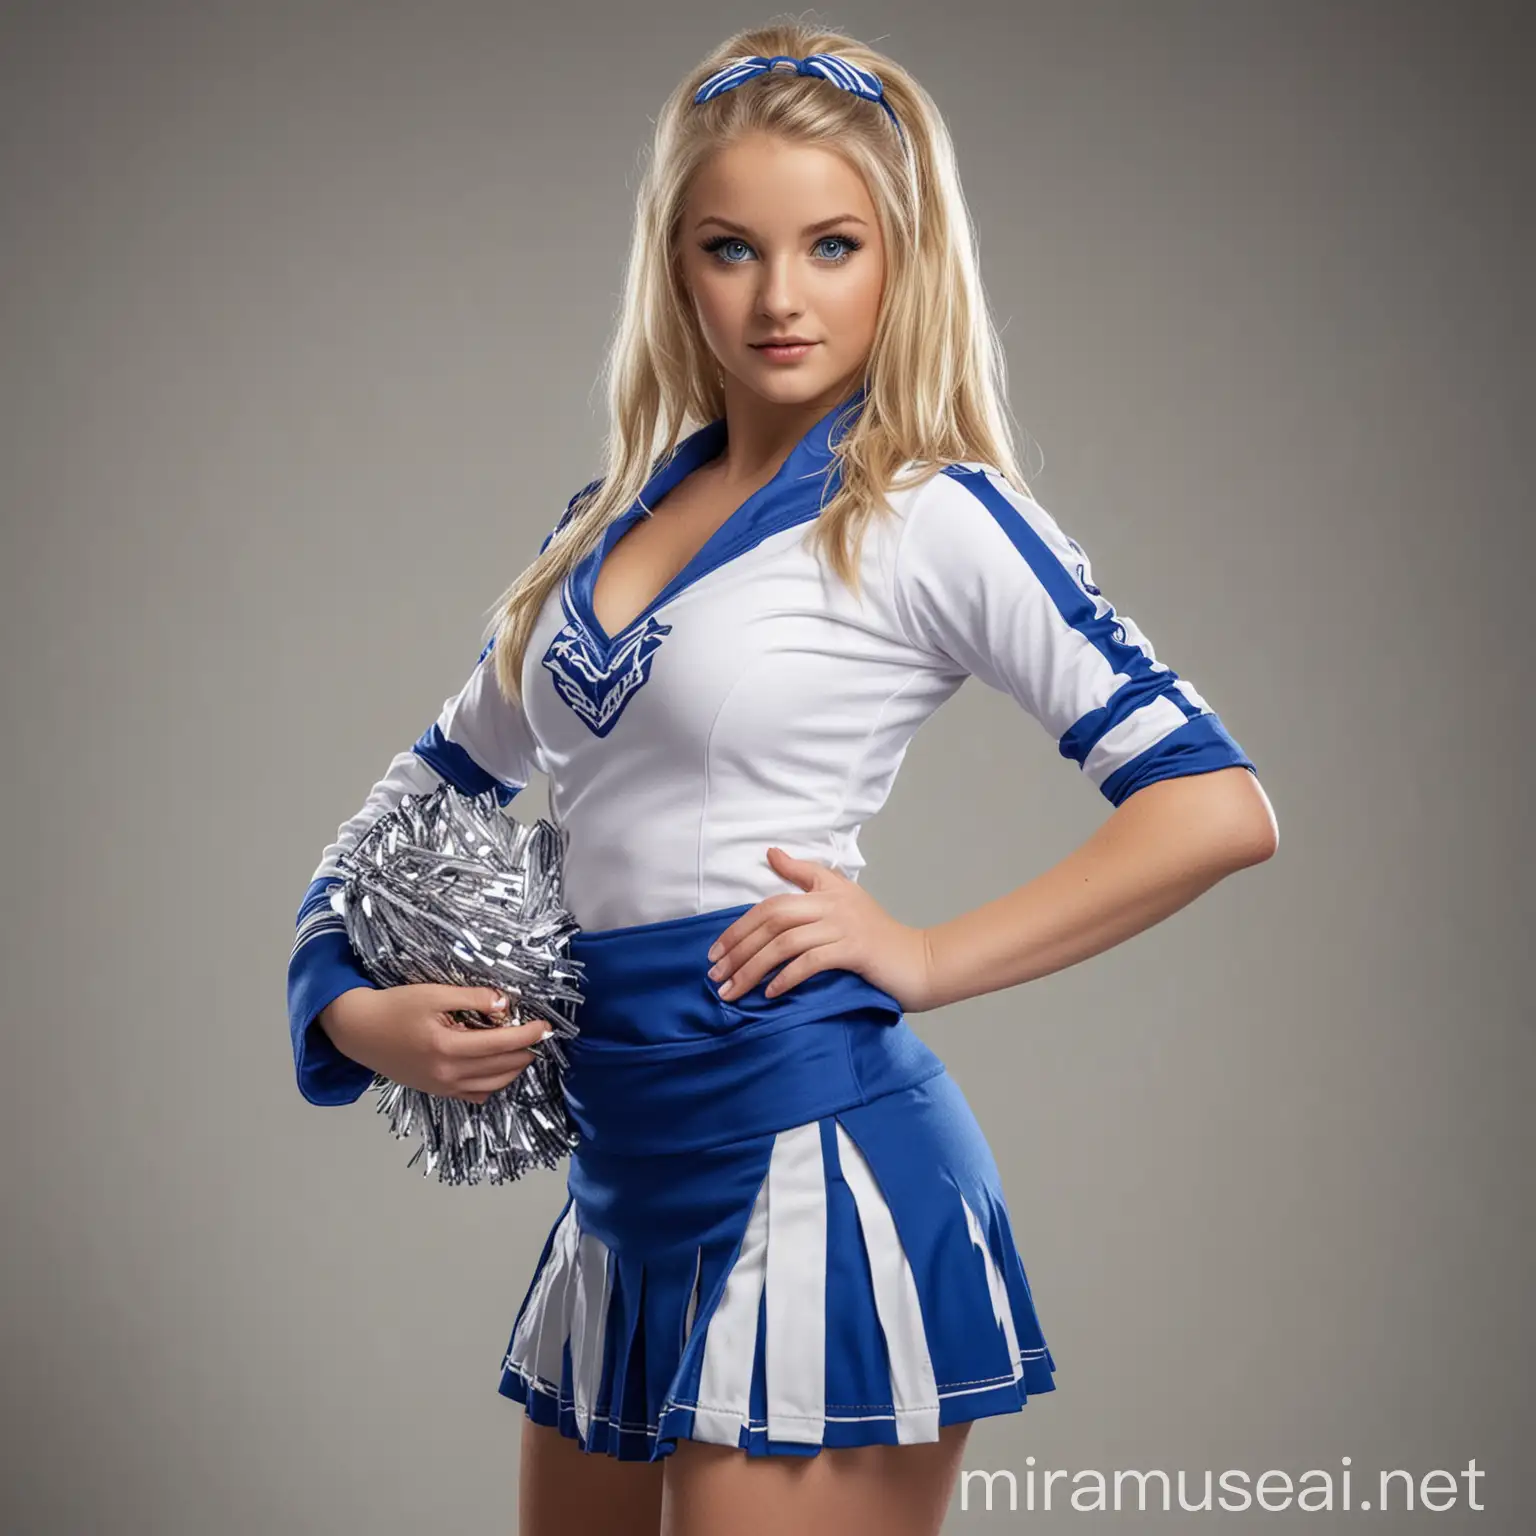 Attractive Blonde Cheerleader in Blue and White Uniform